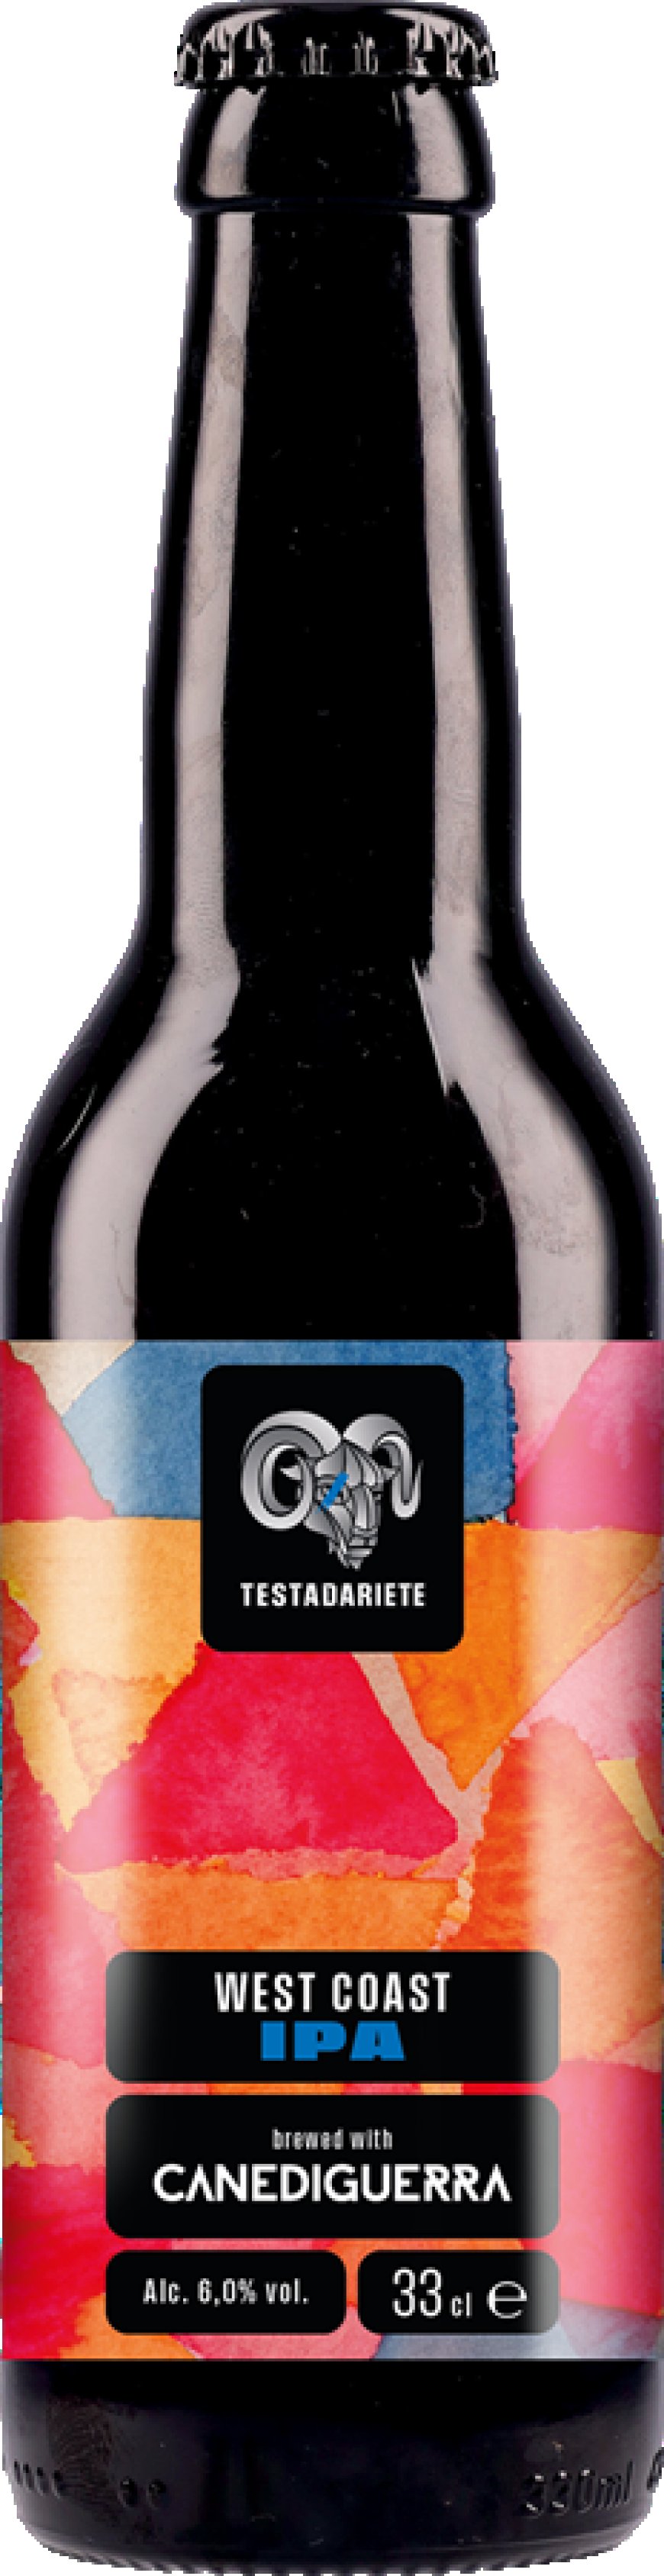 Testadariete presenta a Beer&Food Attraction l'ampliamento gamma prodotto e la nuova brand identity